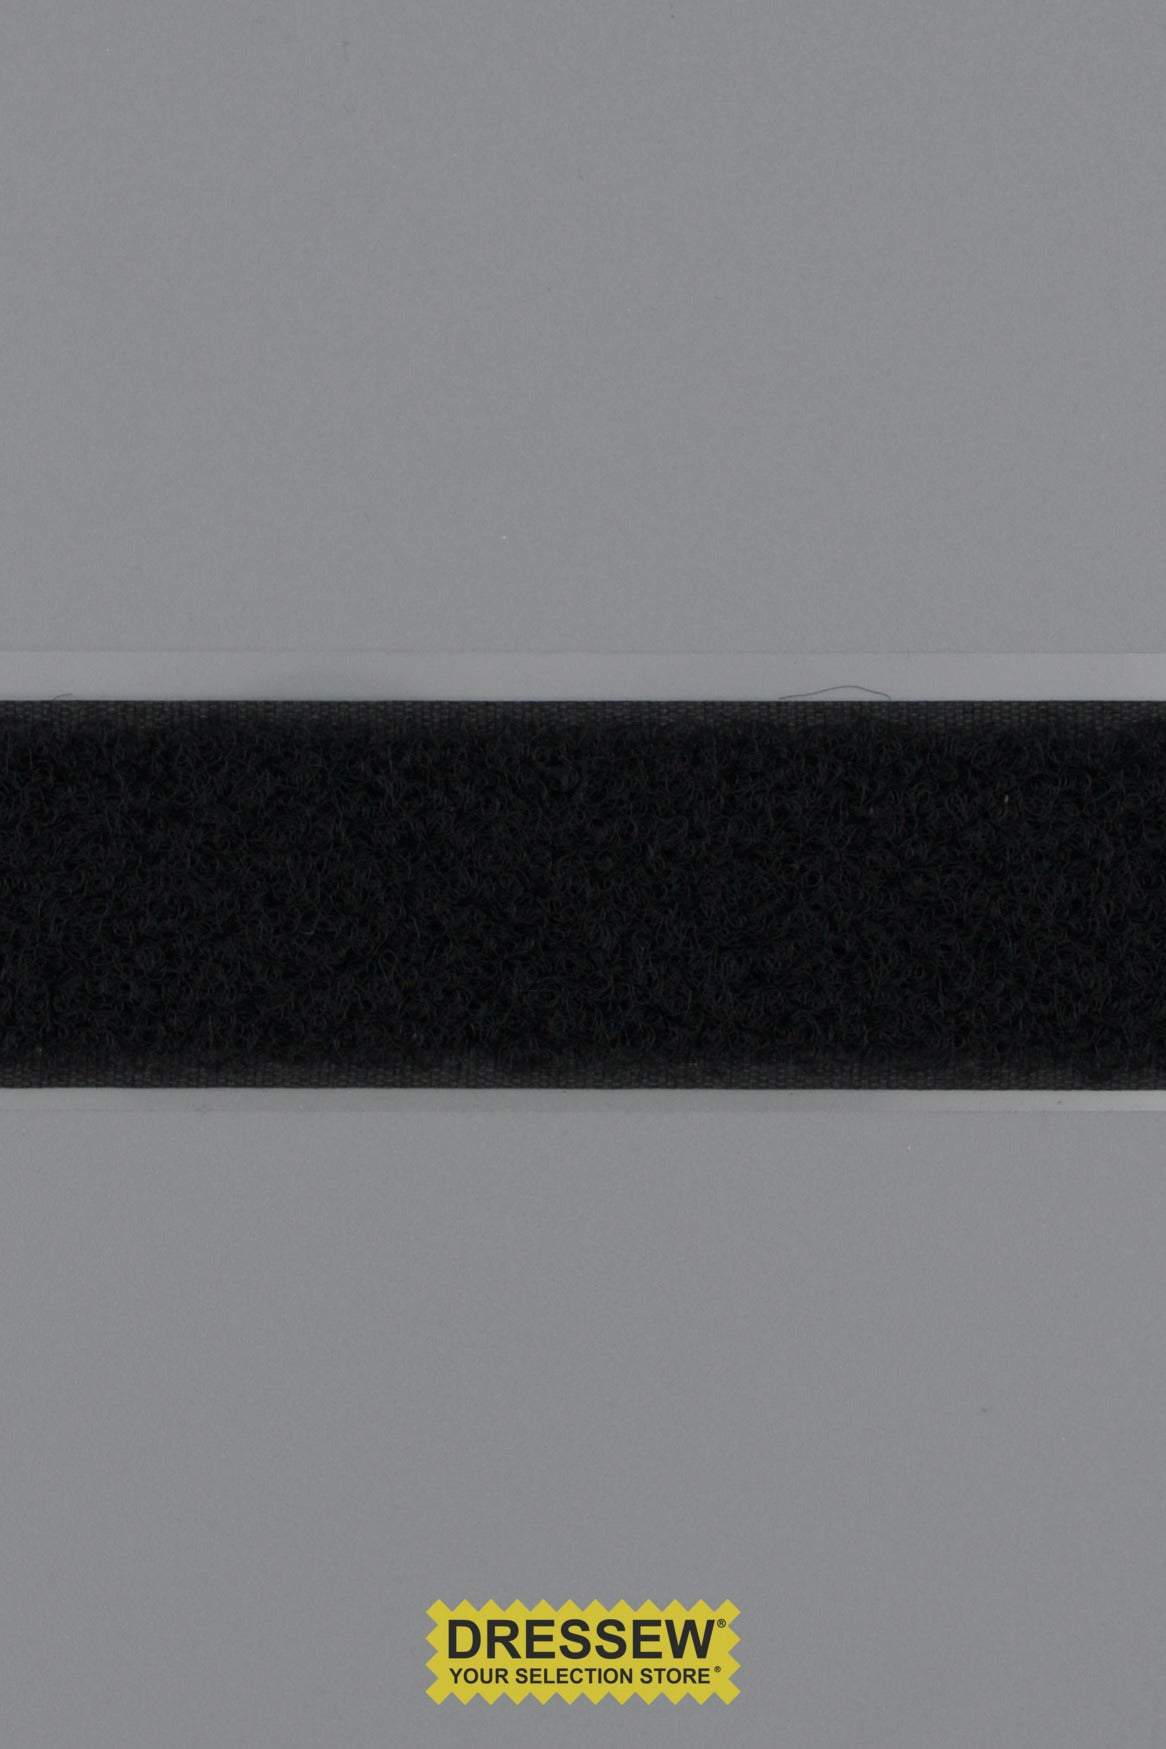 Stick-On Loop Tape 25mm (1") Black